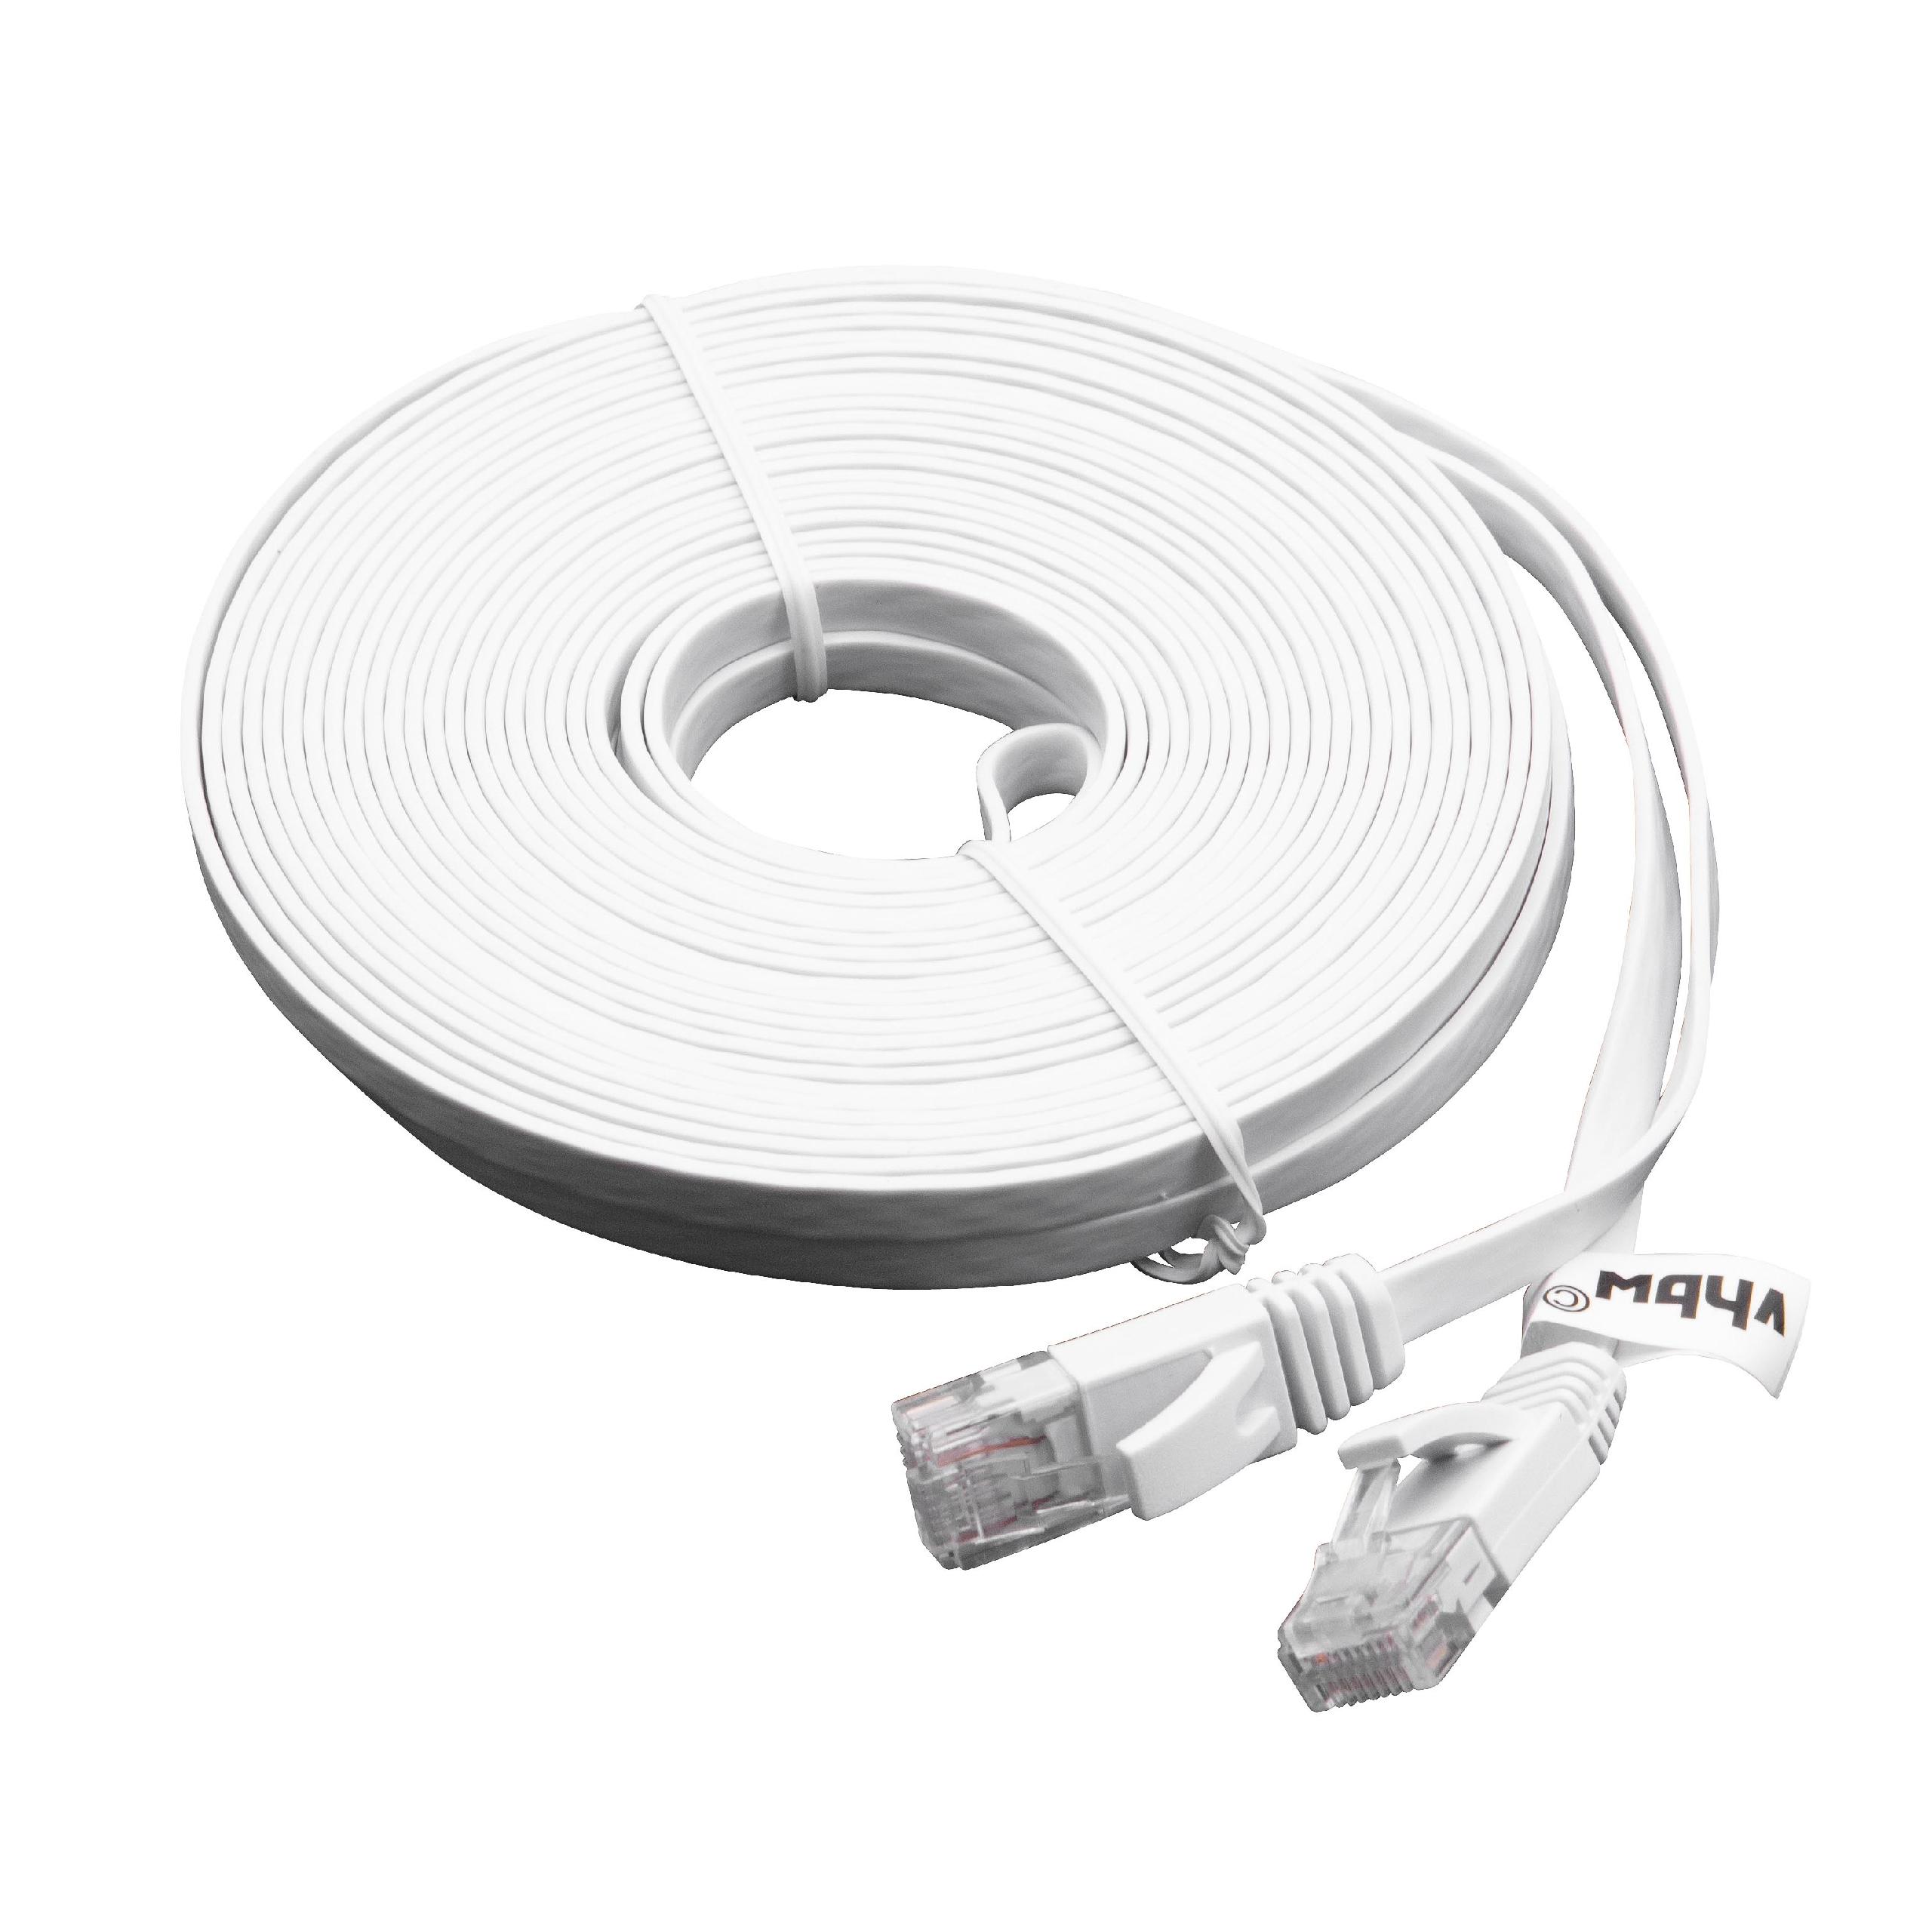 Netzwerkkabel LAN Kabel Patchkabel Cat6, 10m, weiß, flach